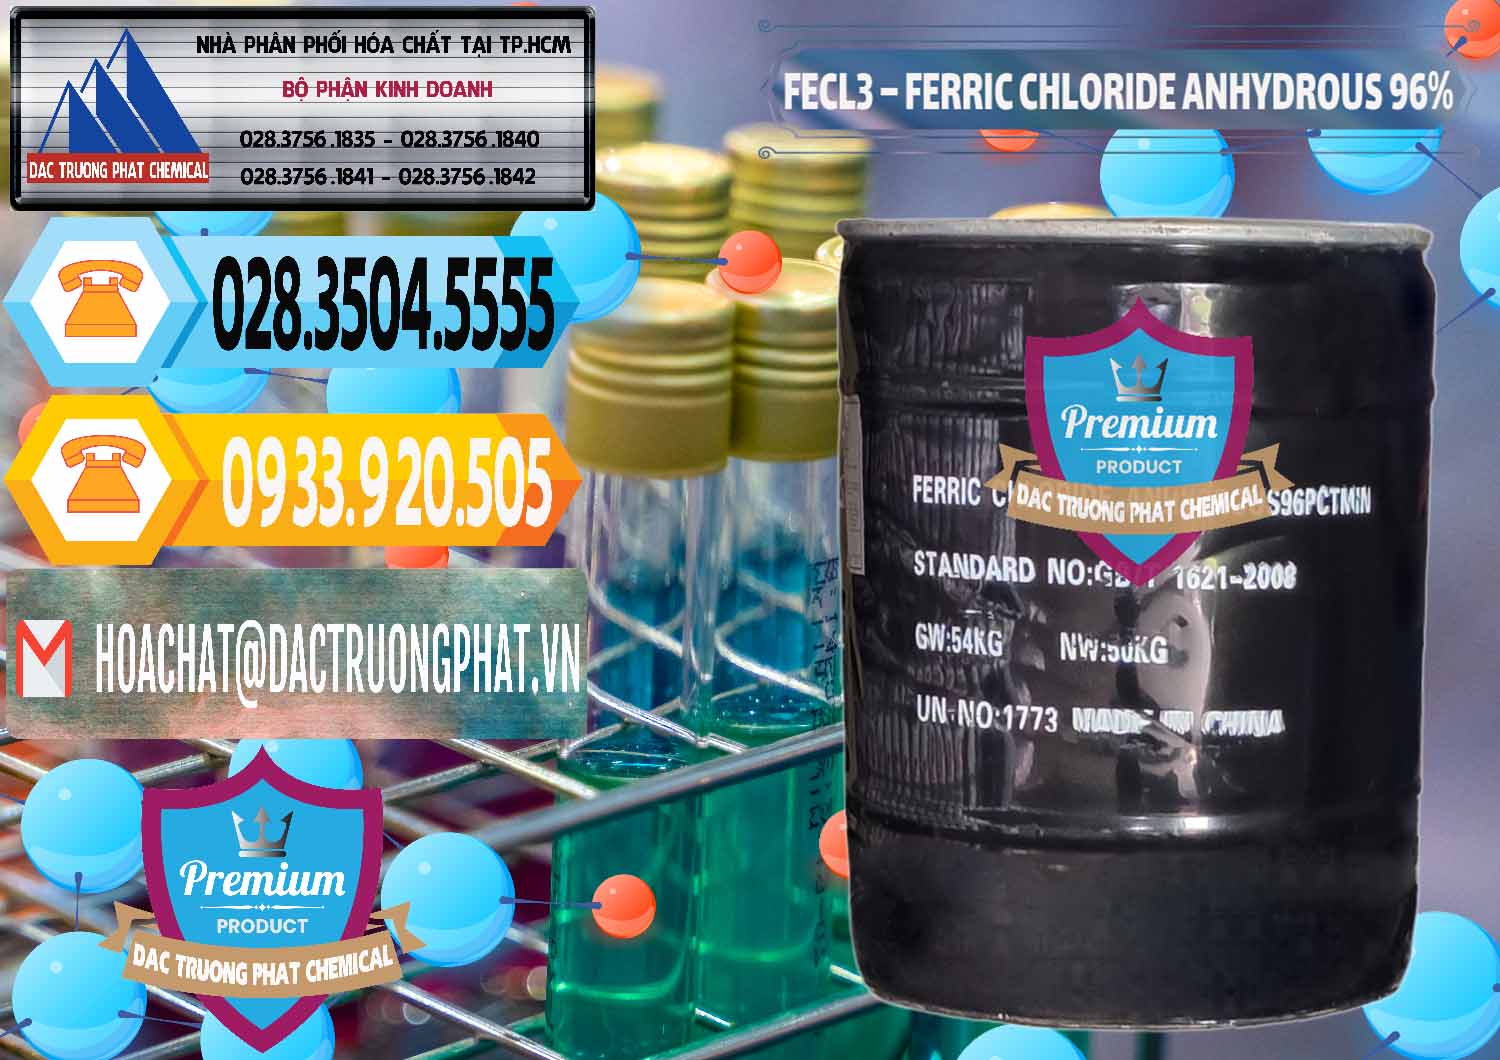 Nhà cung cấp ( bán ) FECL3 – Ferric Chloride Anhydrous 96% Trung Quốc China - 0065 - Bán - cung cấp hóa chất tại TP.HCM - hoachattayrua.net